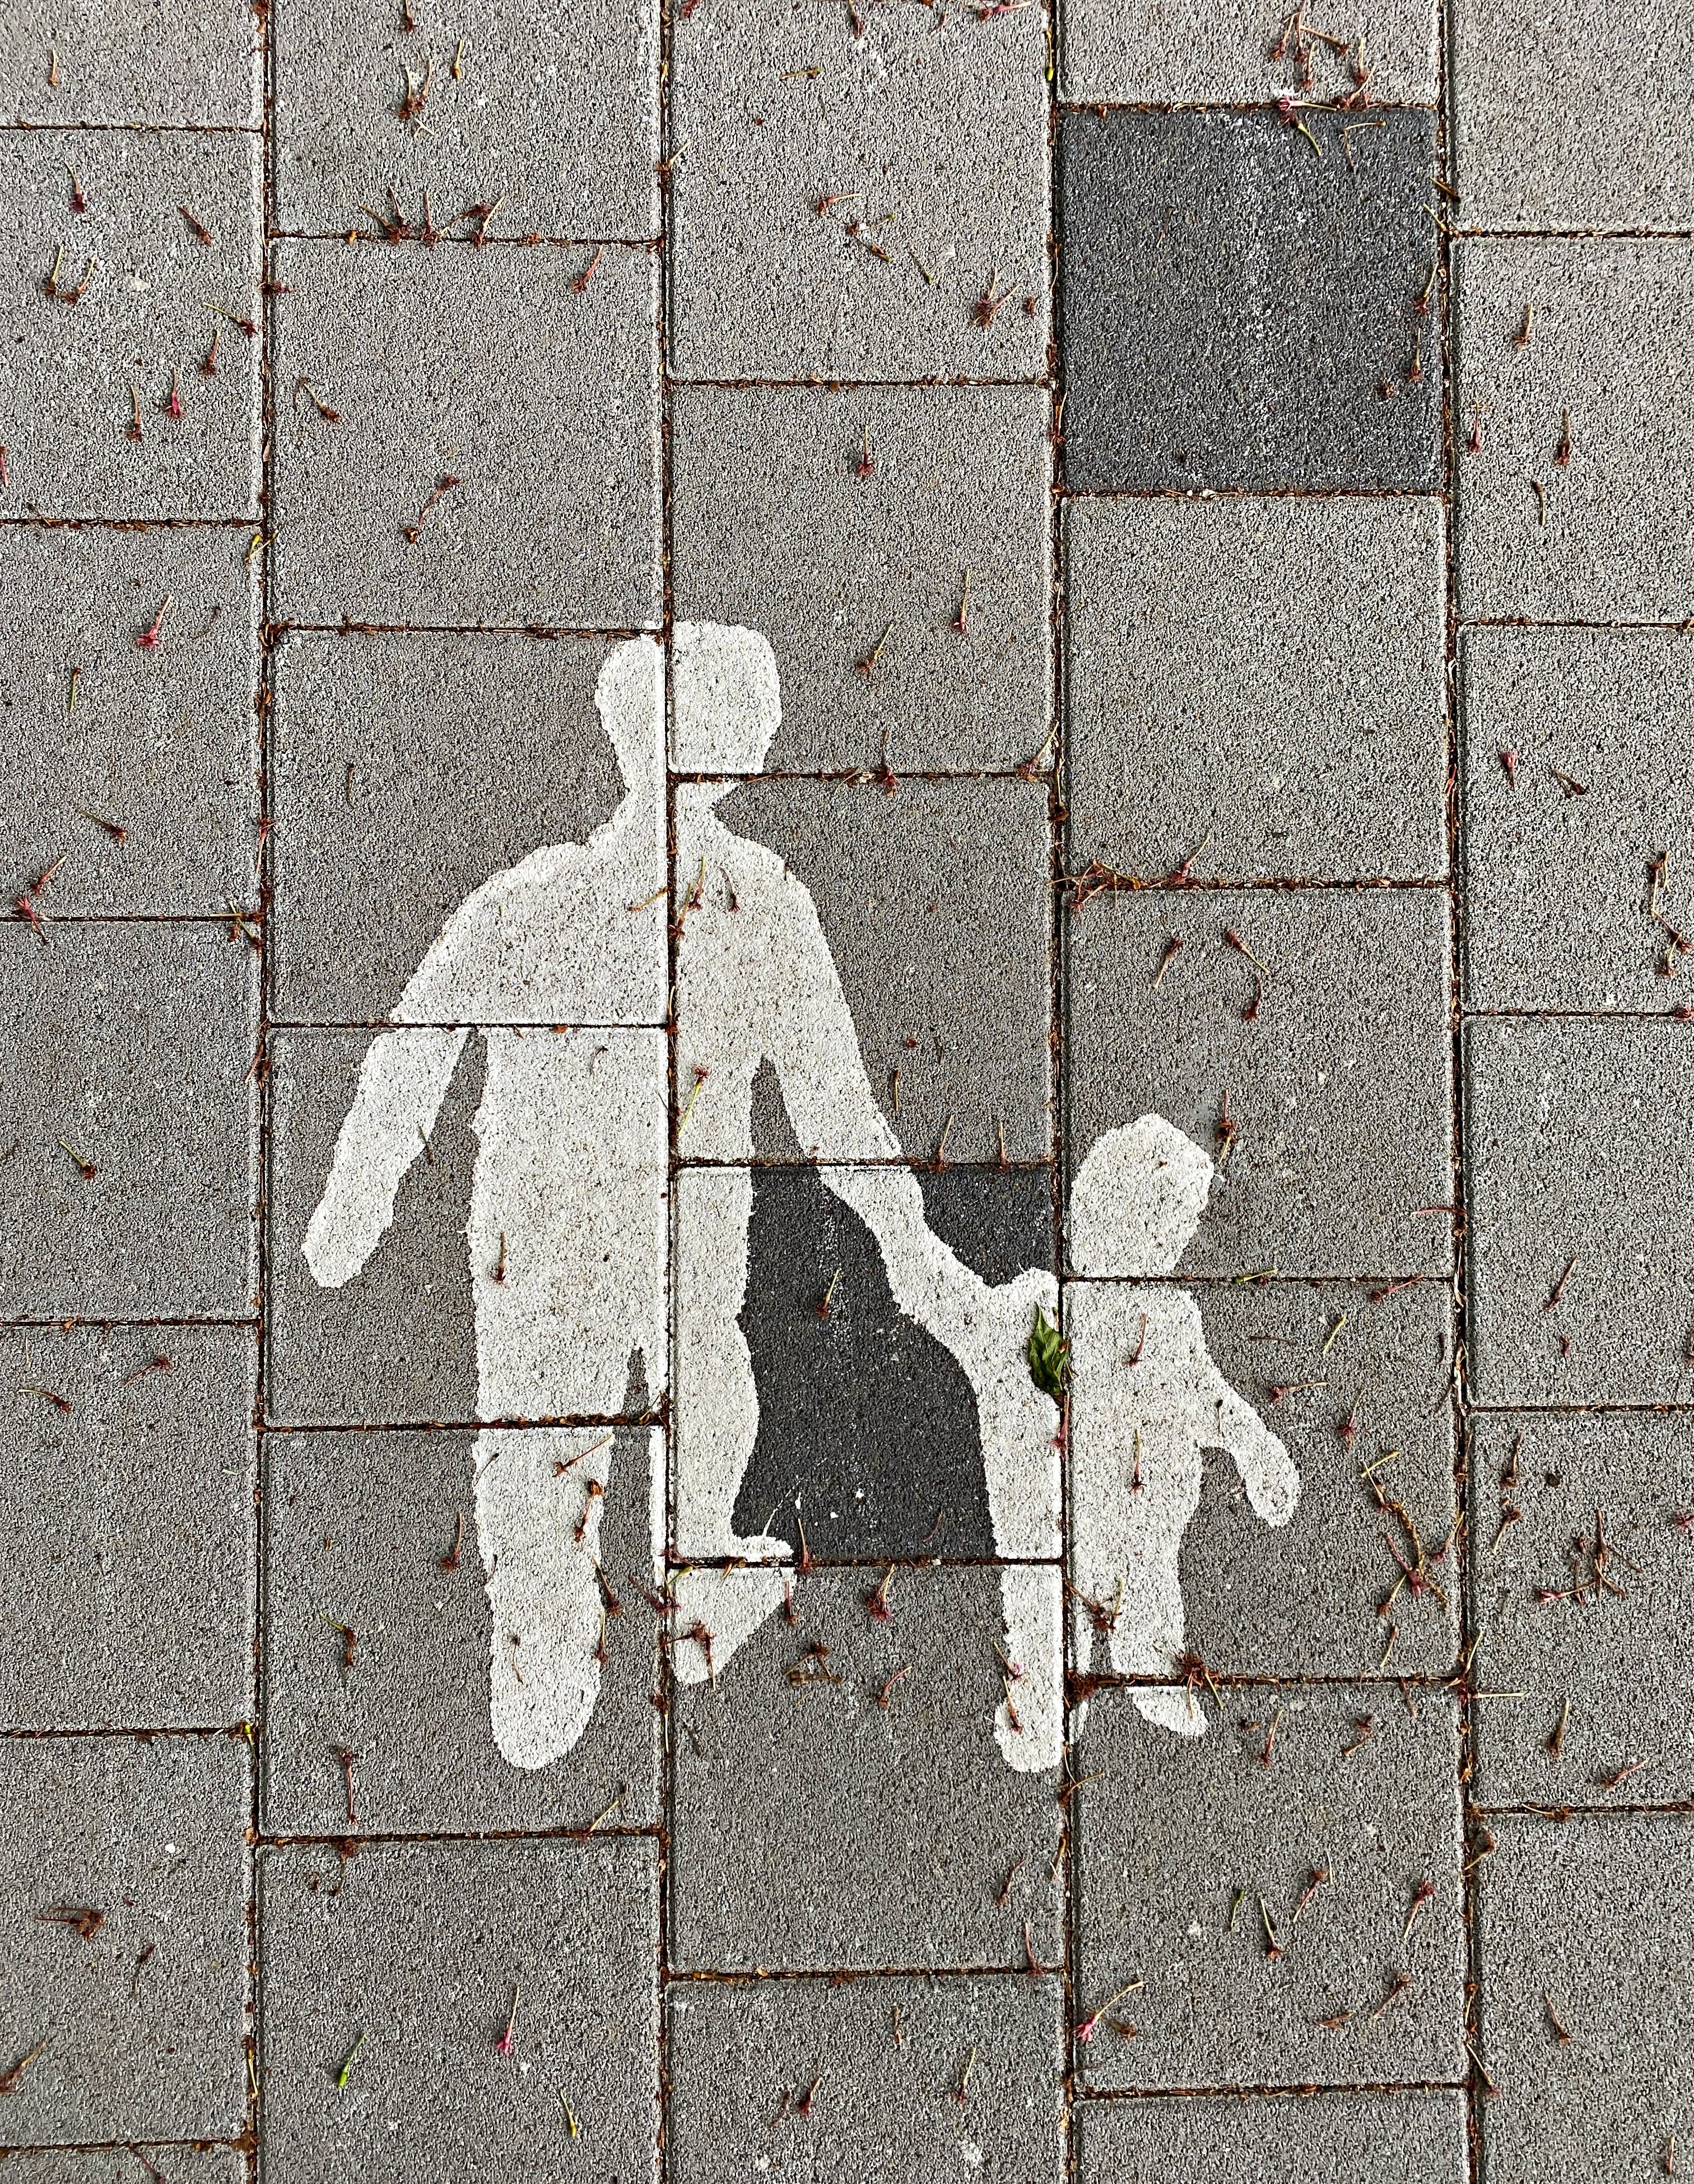 Målning på vägbanan, vuxen håller ett barn i handen.